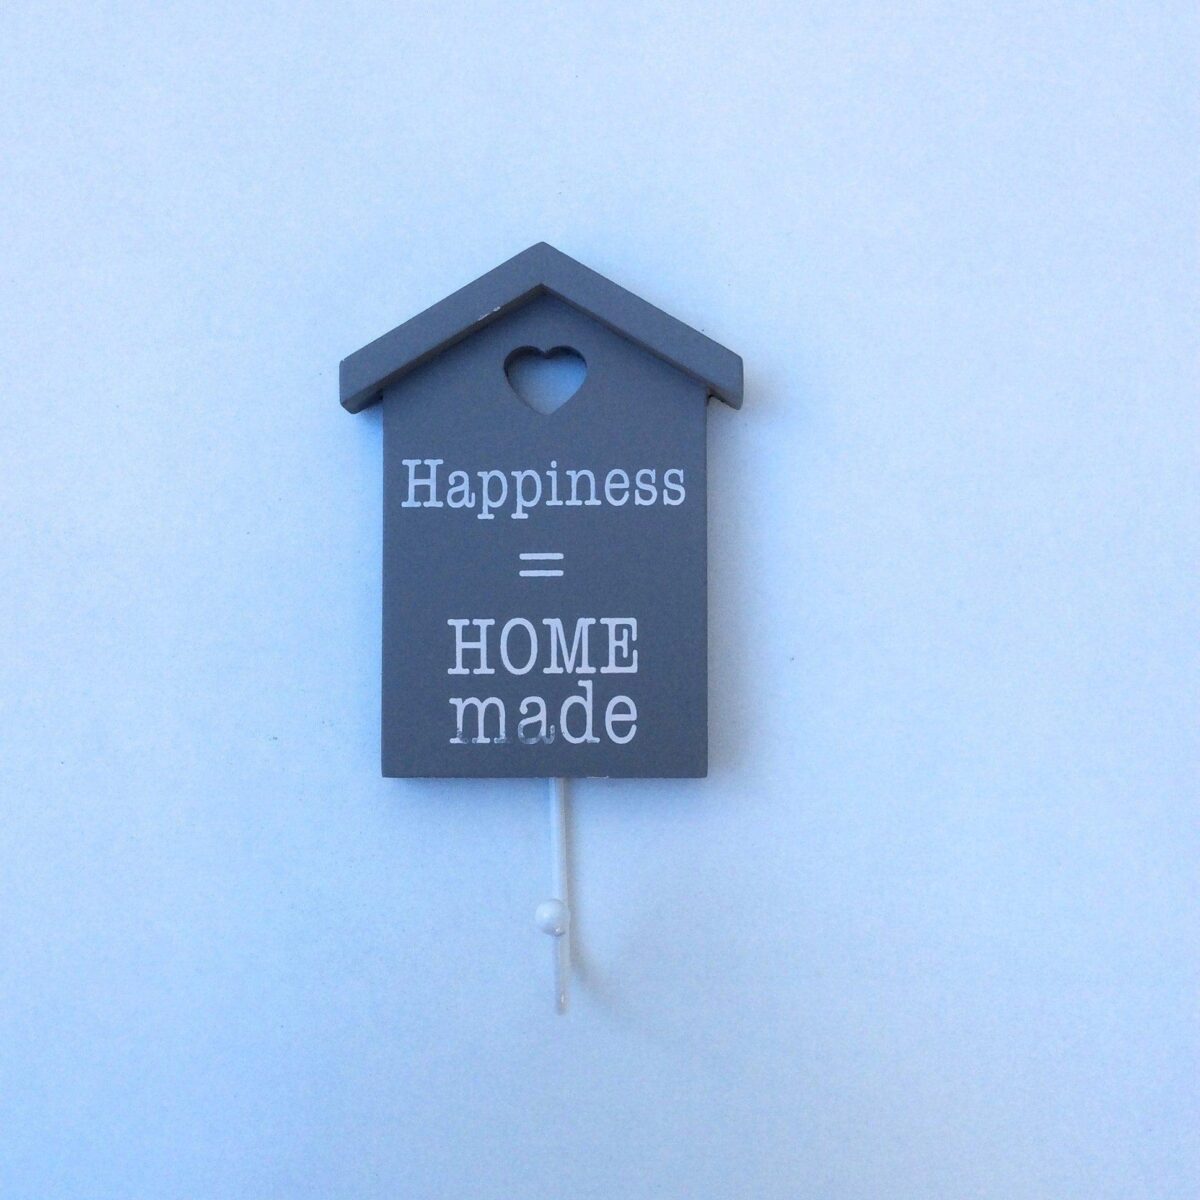 Image 1001 Patère Patere Happiness Home Made dans le site N°1 de patère et porte-manteaux de france